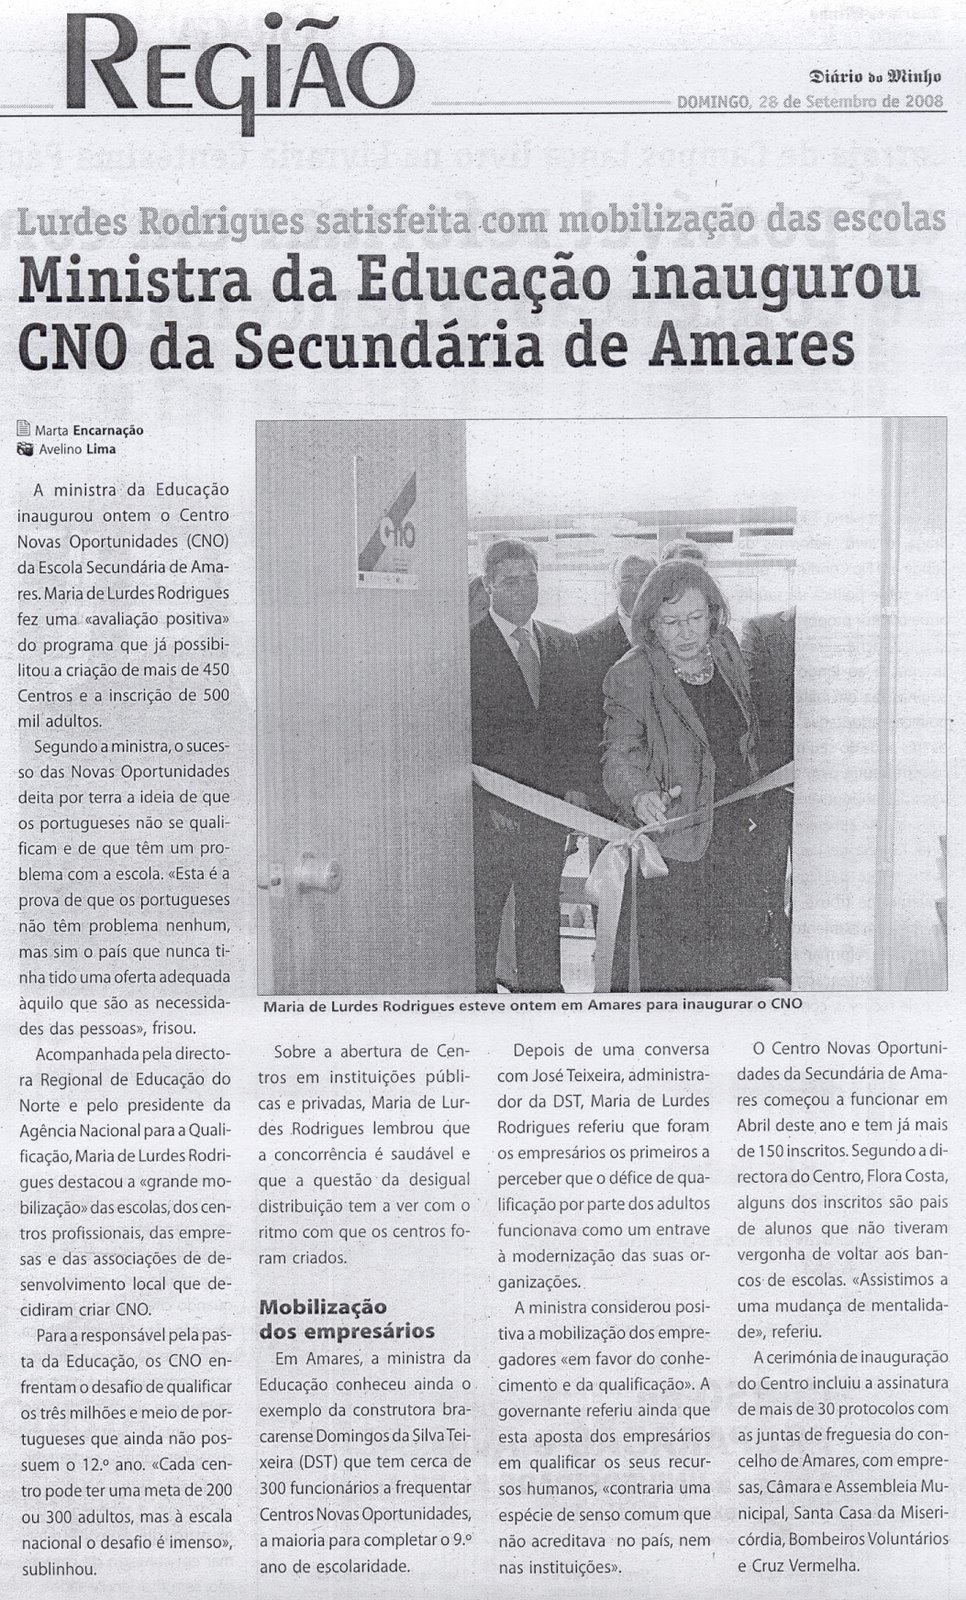 [EDUCAÇÃO+'Ministra+inaugura+CNO+da+Secundária+de+Amares+[DM+28.09.2008].jpg]